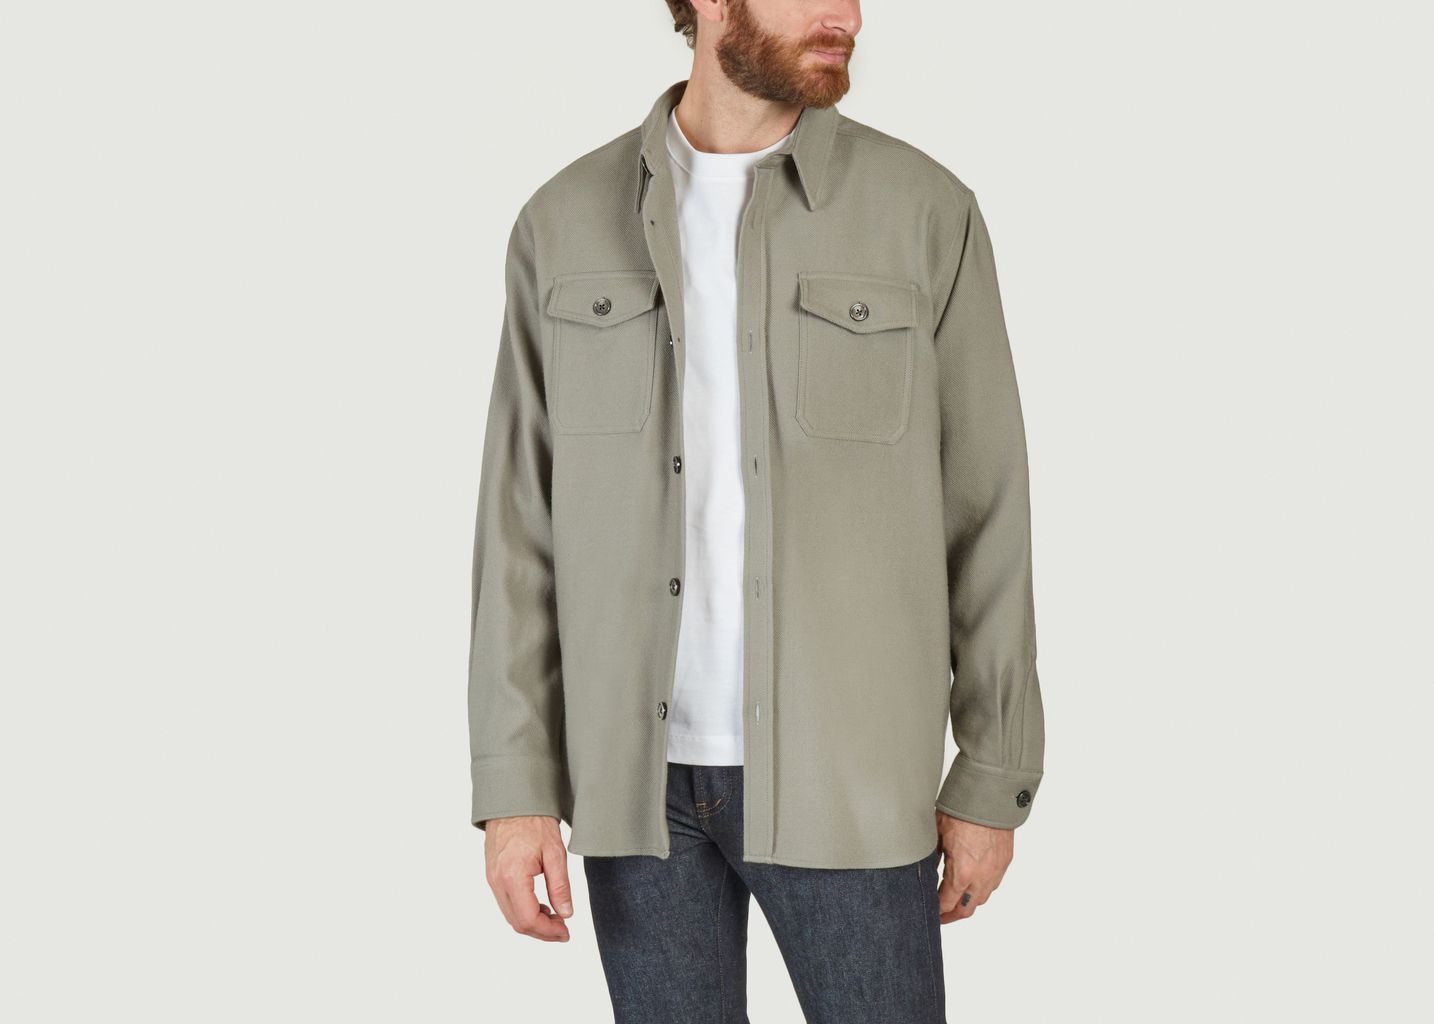 Overshirt jacket  - AMI Paris